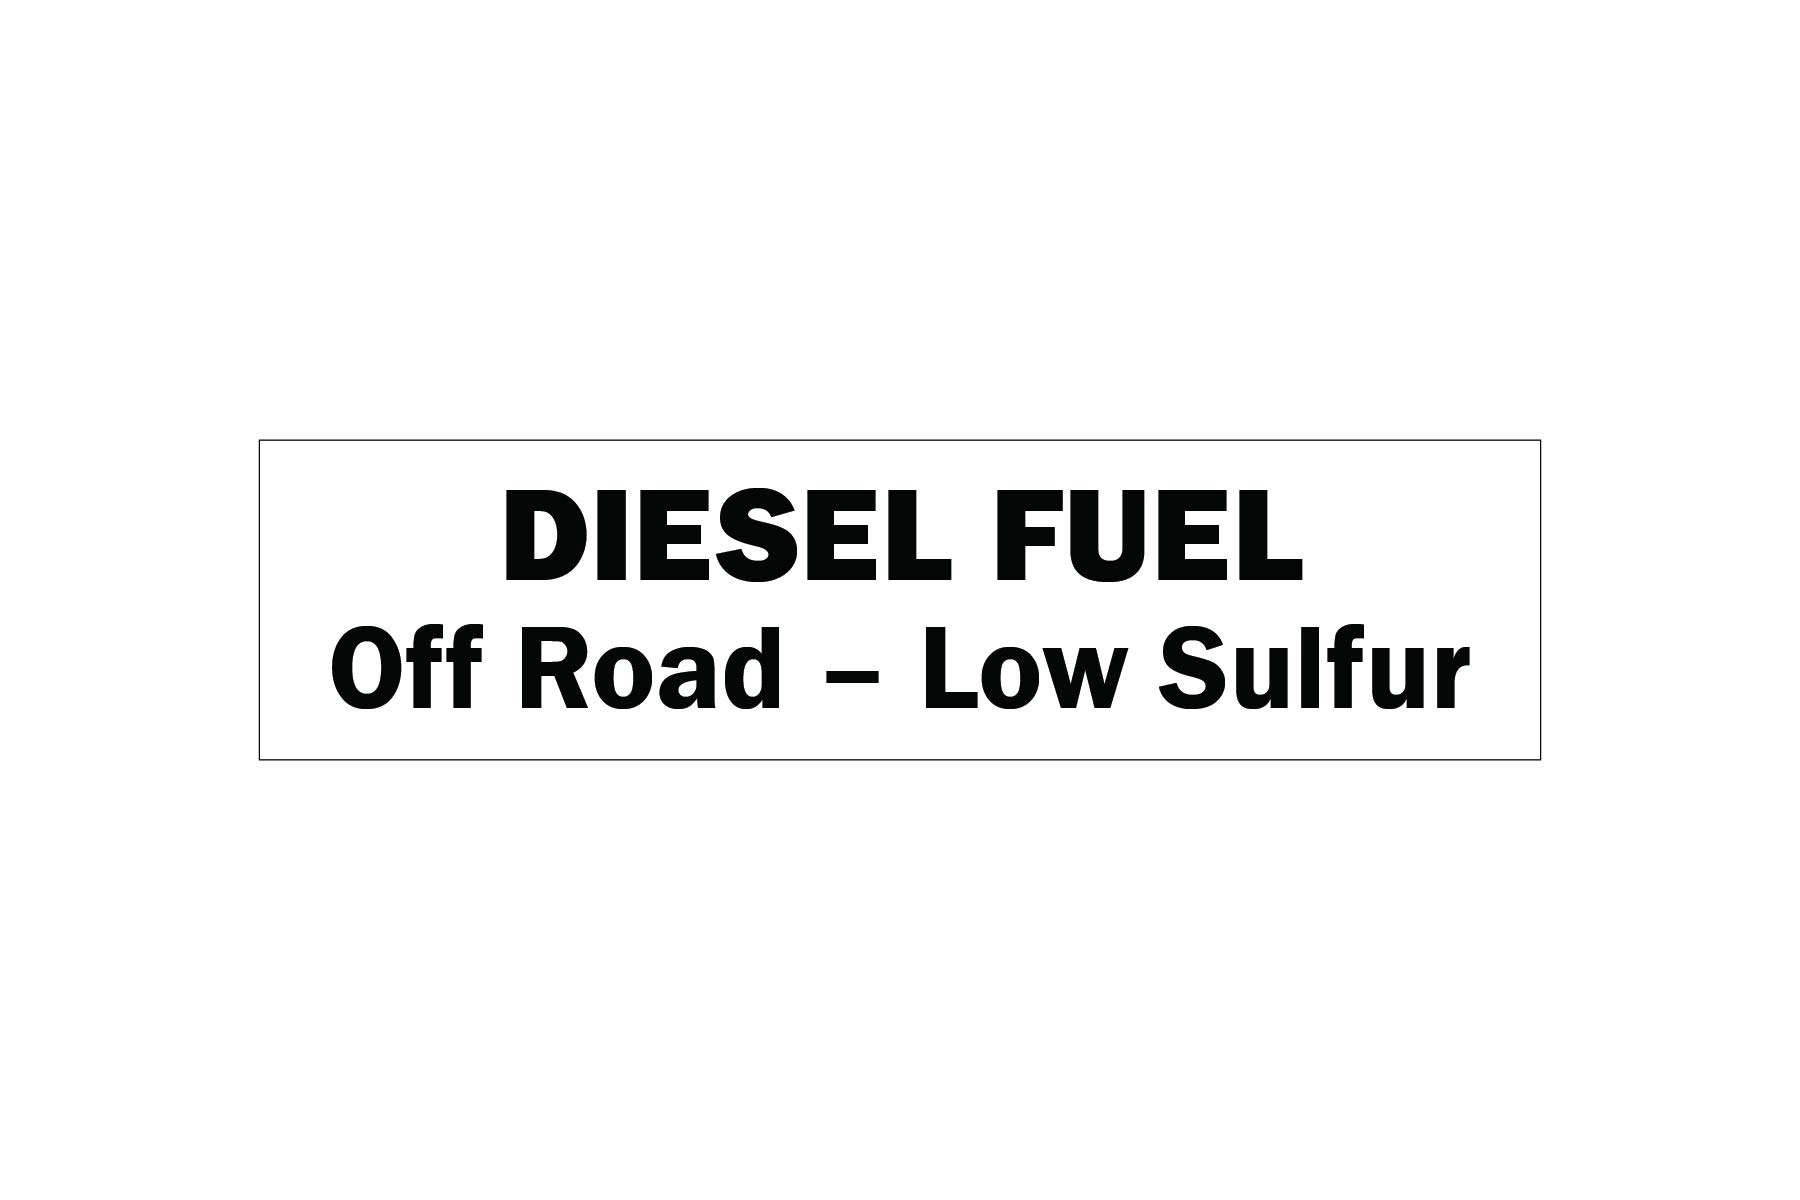 diesel-fuel-on-road-low-sulfur-sign-nhe-28283